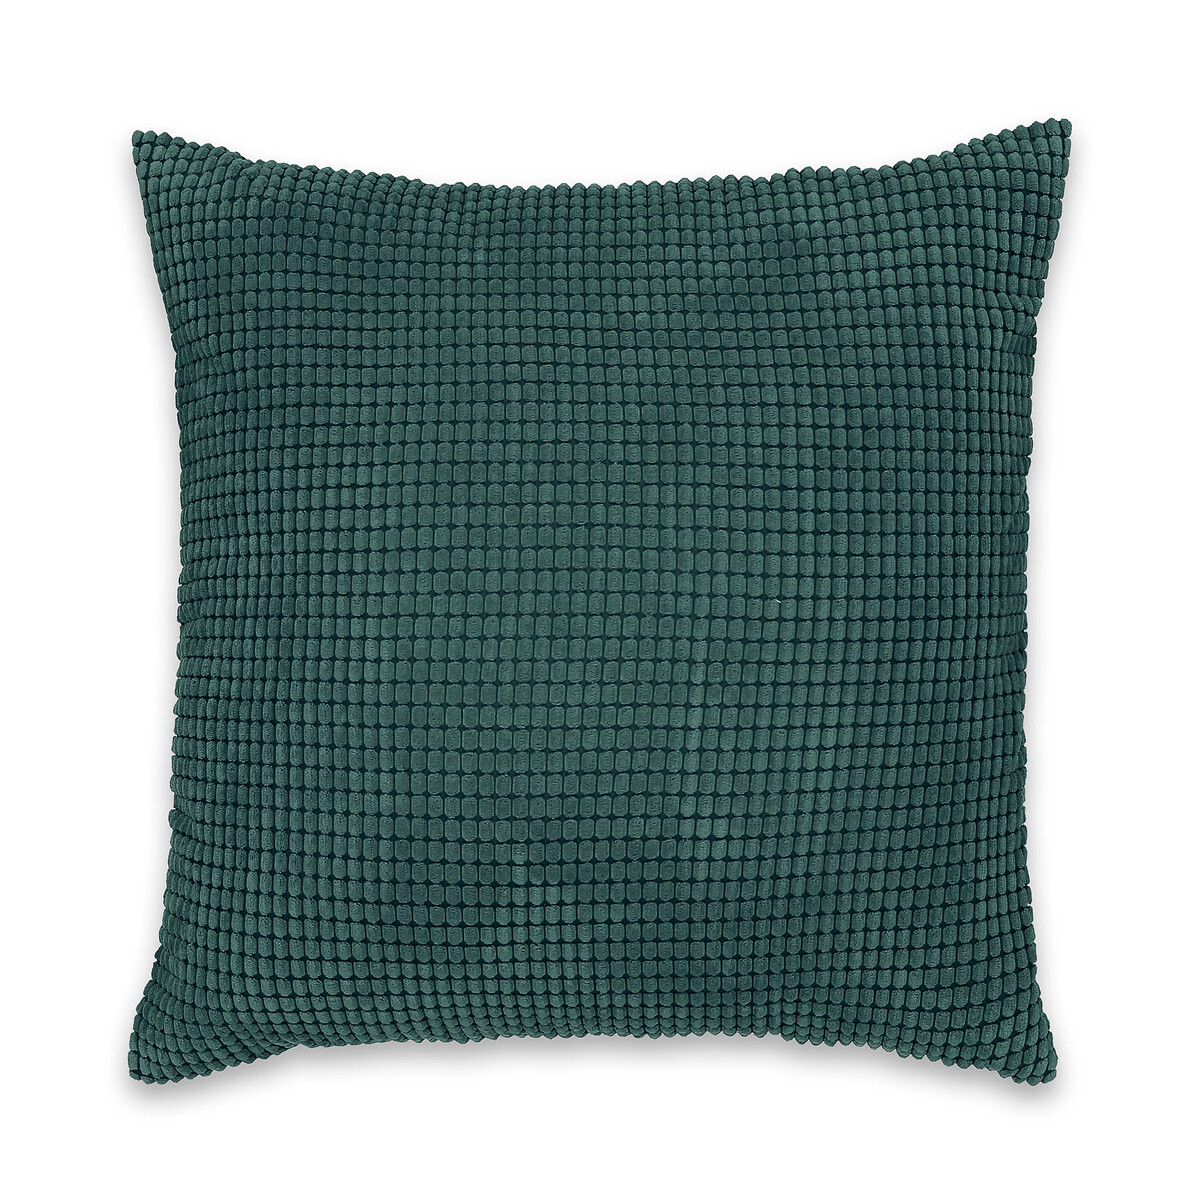 Чехол La Redoute Для подушки рельефный FLUFFY 65 x 65 см зеленый, размер 65 x 65 см